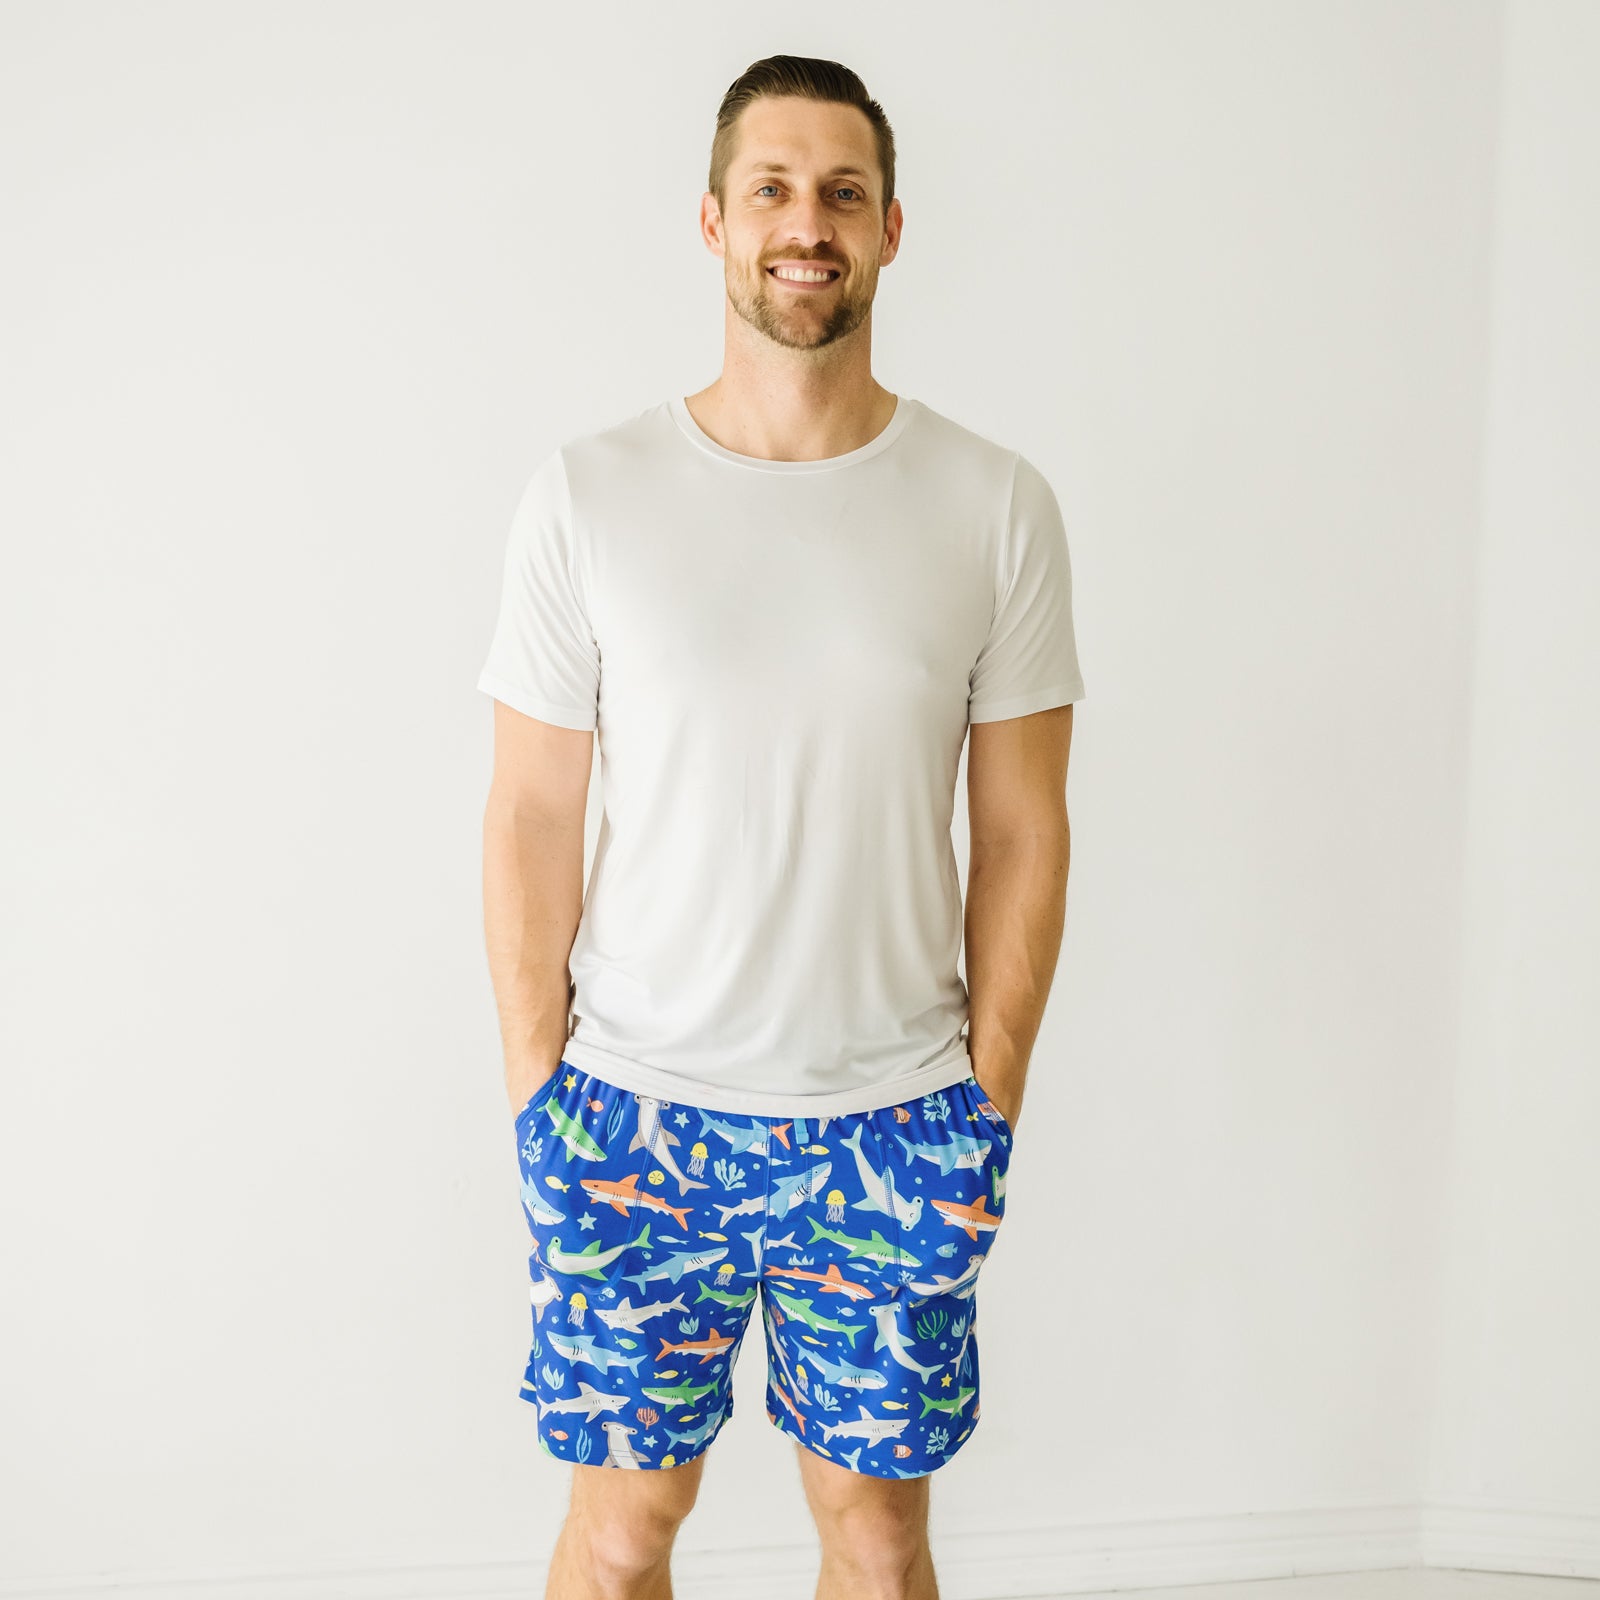 Man wearing Rad Reef men's pajama shorts and coordinating pajama top